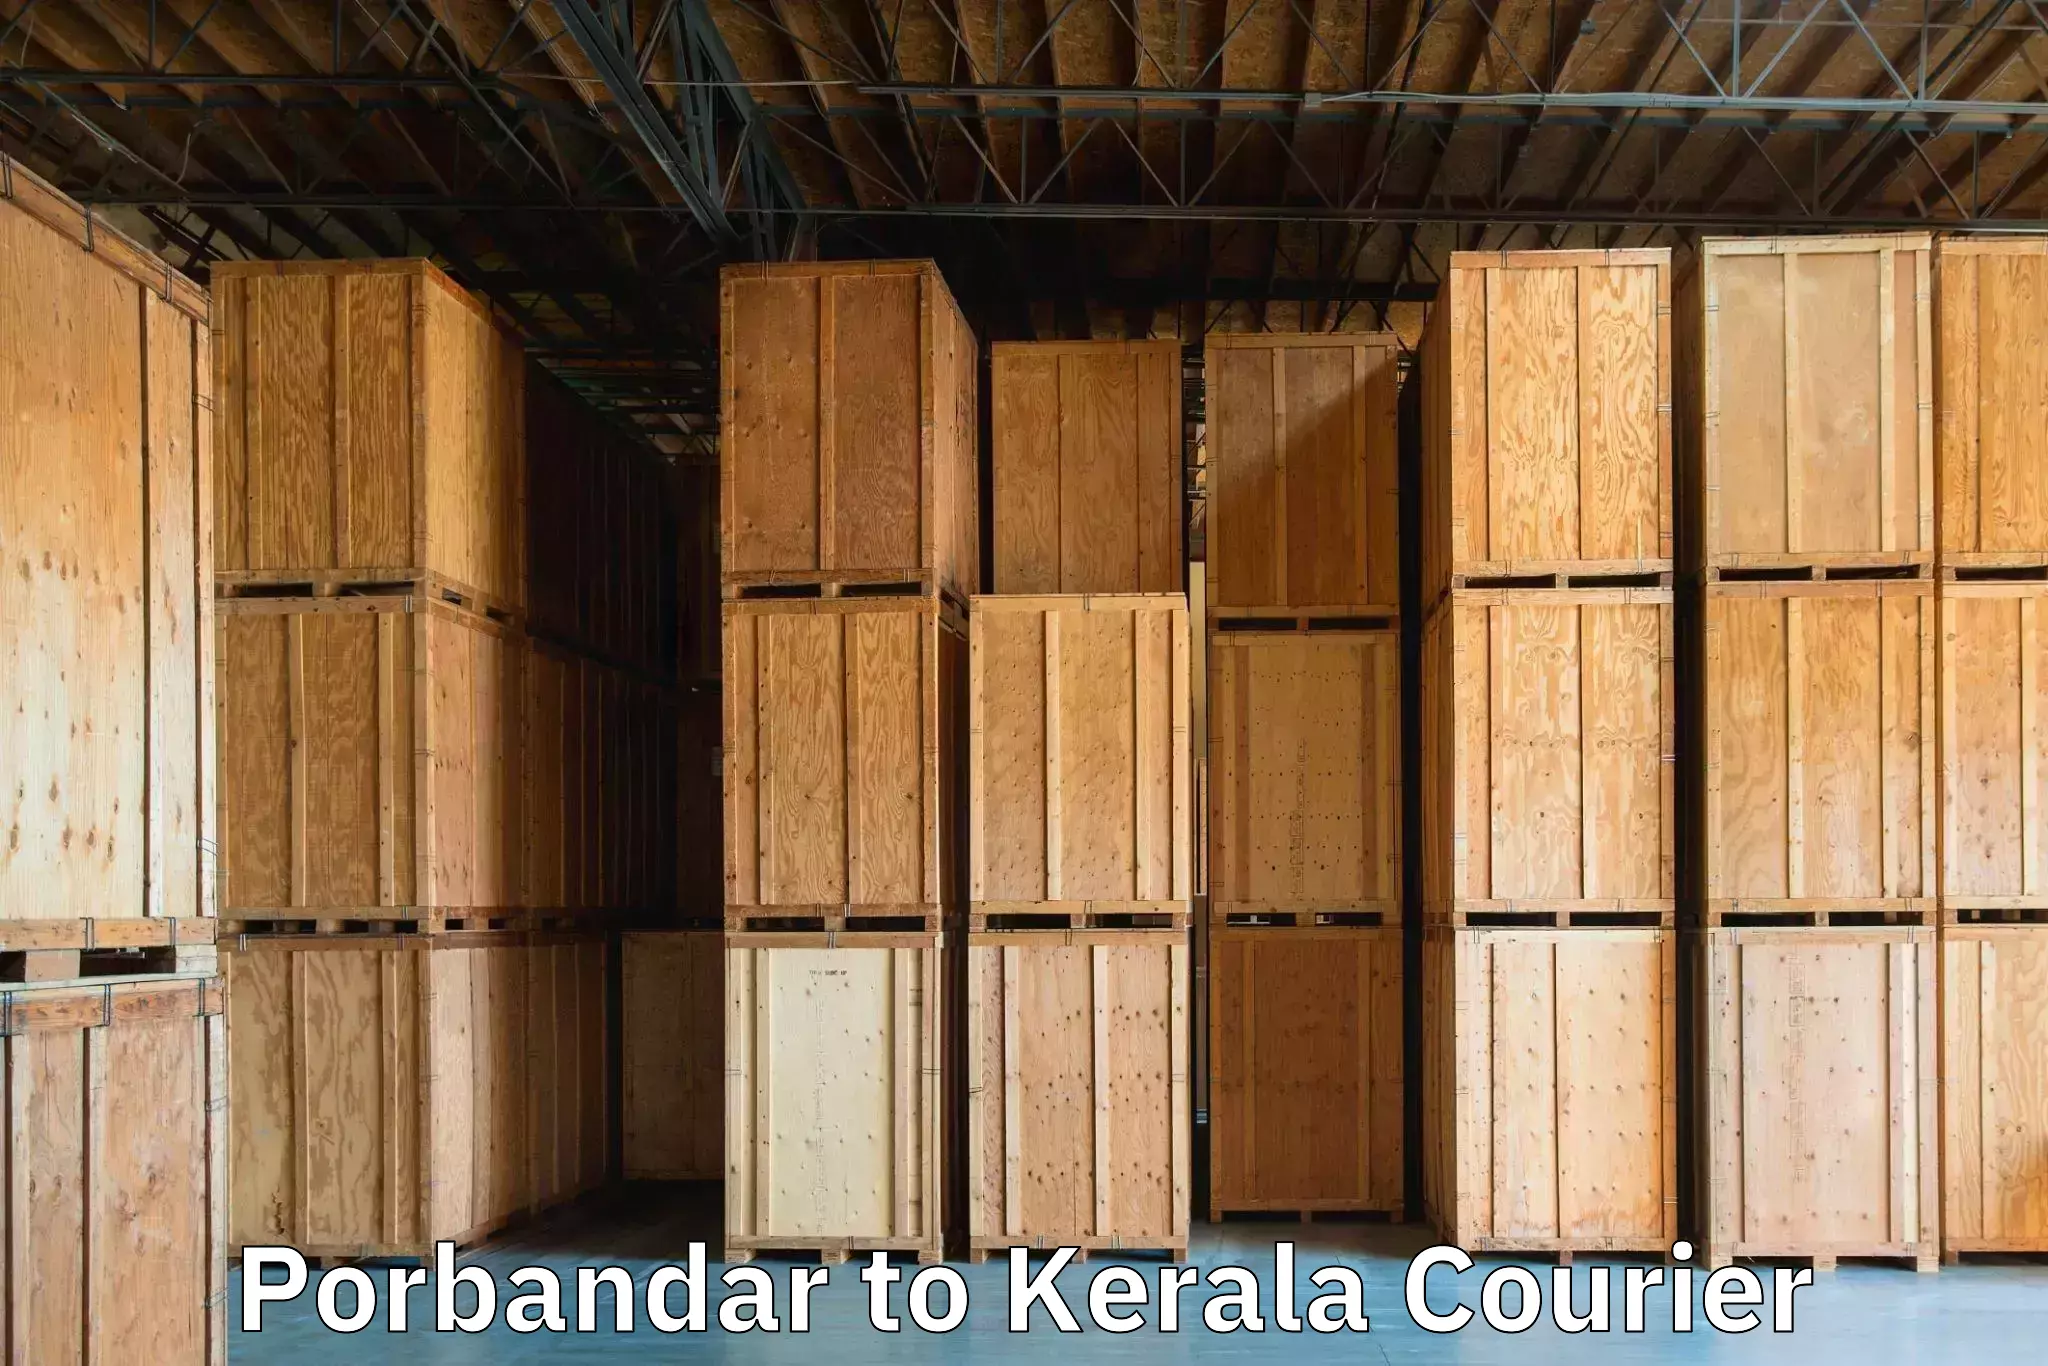 Baggage transport network Porbandar to Kottarakkara